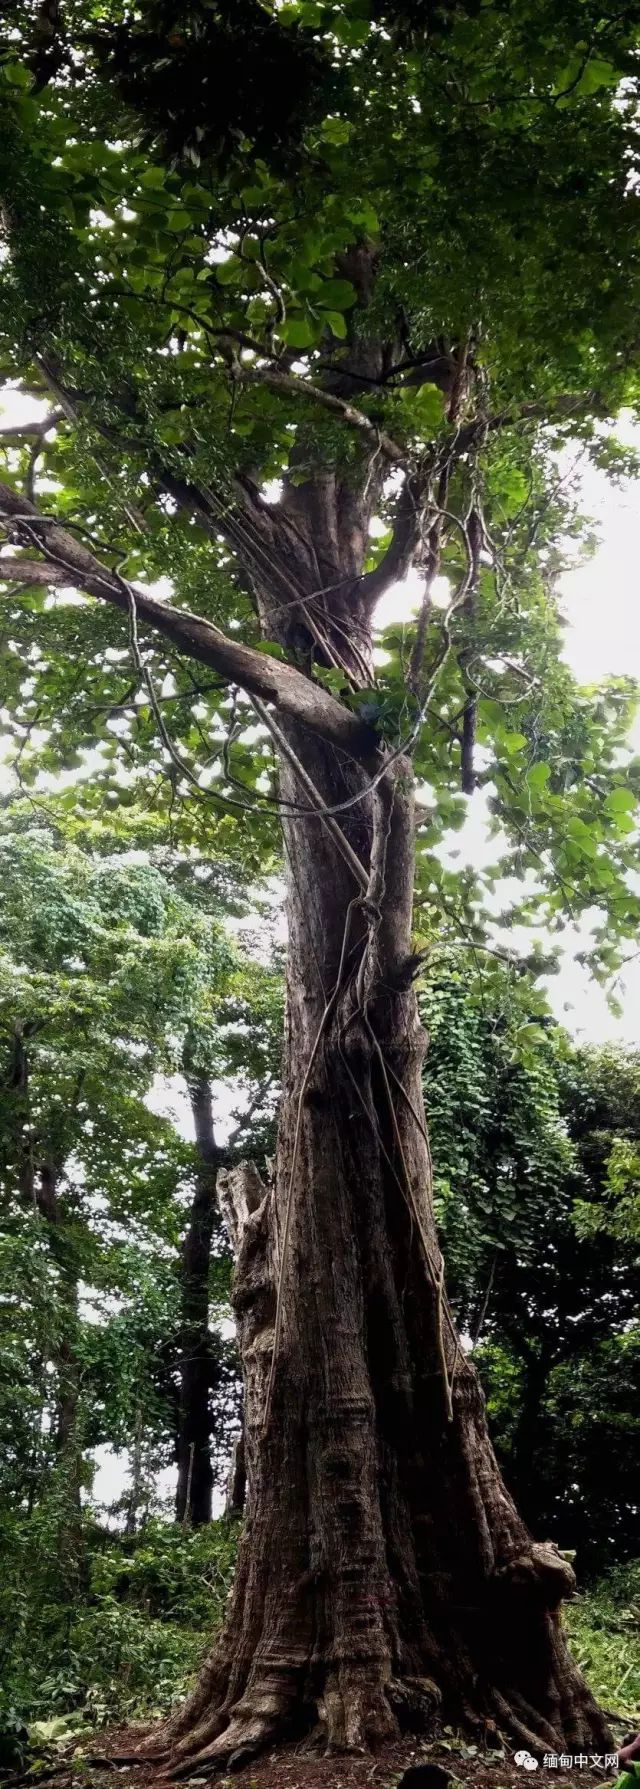 缅甸的全球最大柚木树王